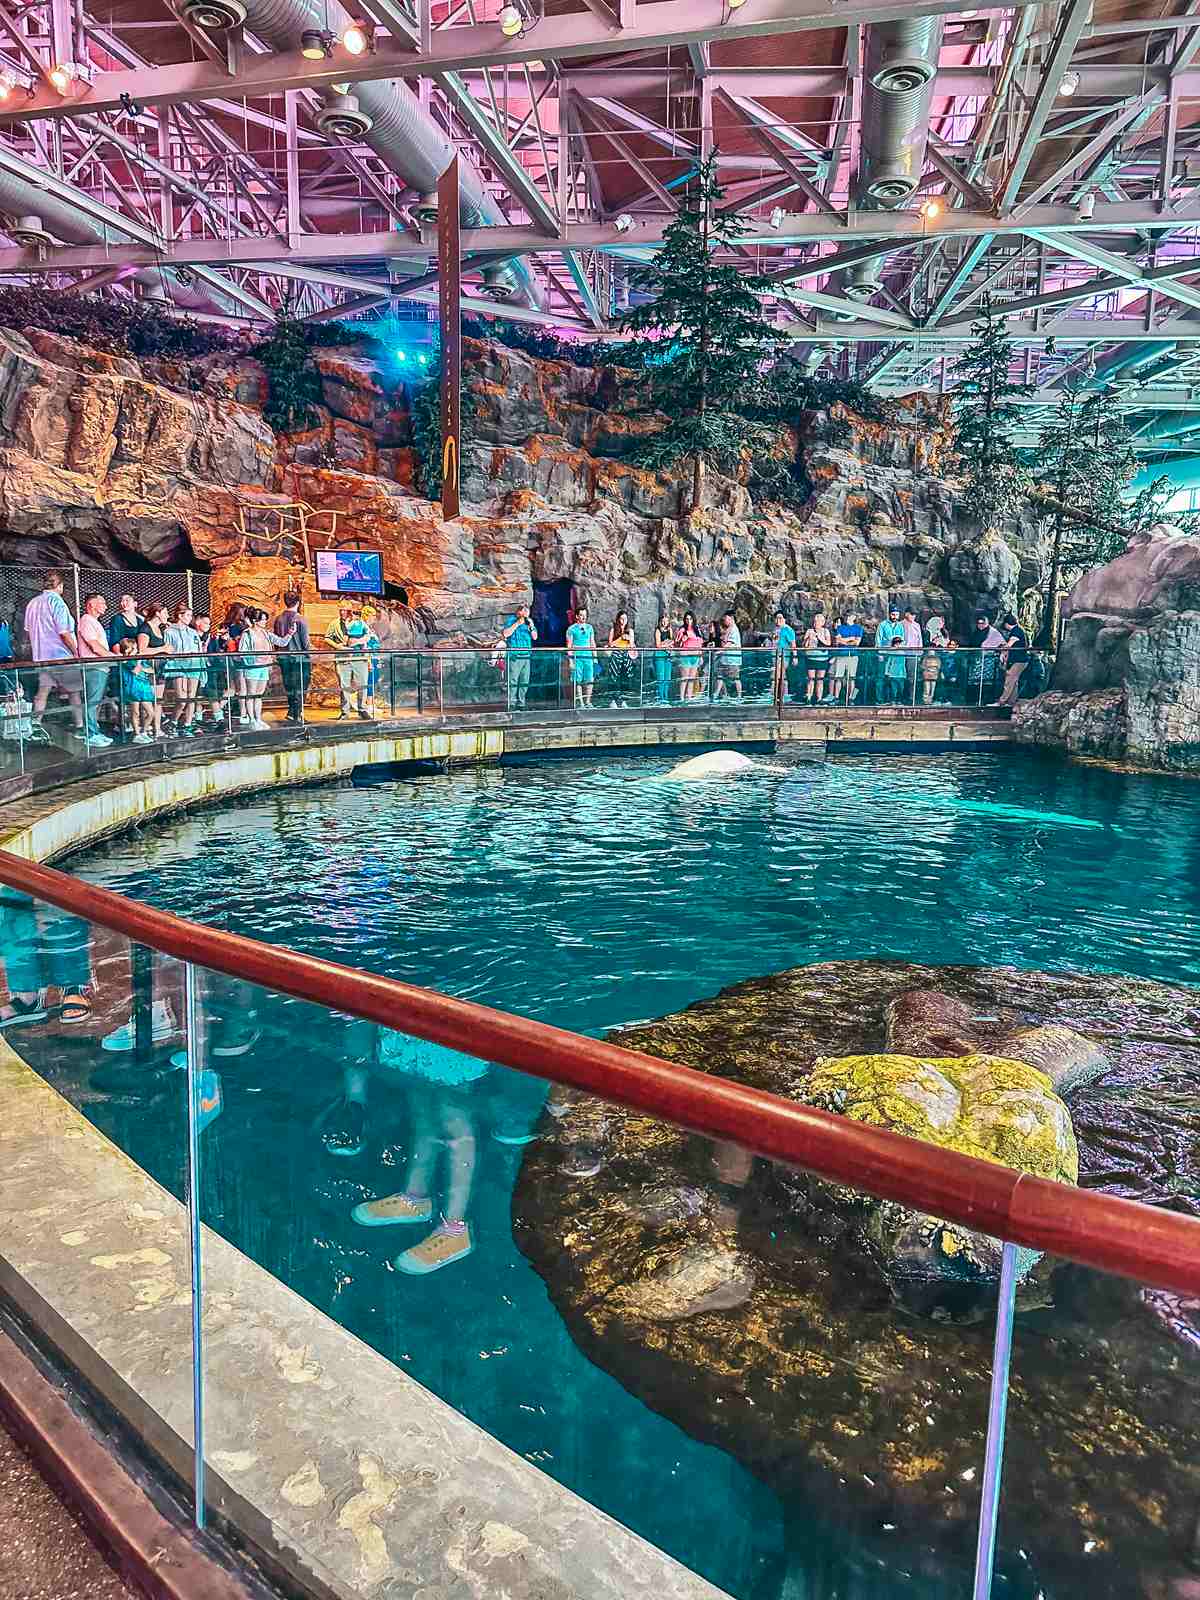 The Shedd Aquarium in Chicago